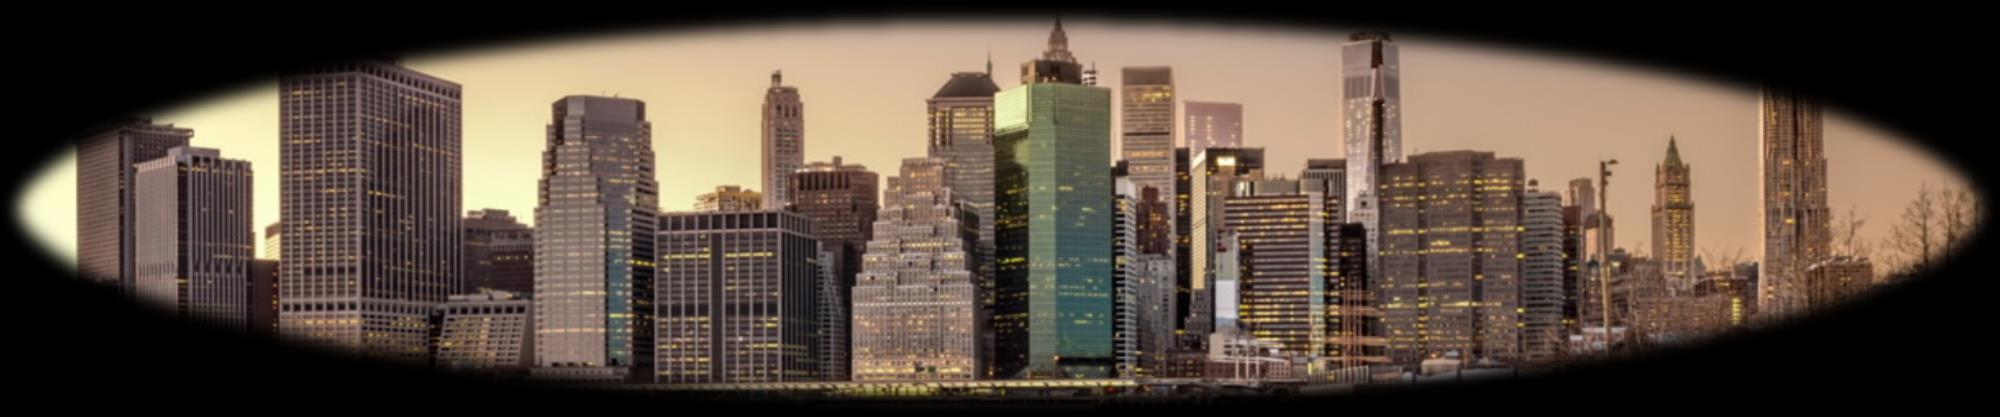 New York Ciudad moderna y vanguardista conocida por su míticos rascacielos, como el Empire State o el Rockefeller center, brinda miles de oportunidades al viajero, podrán dar un paseo por los